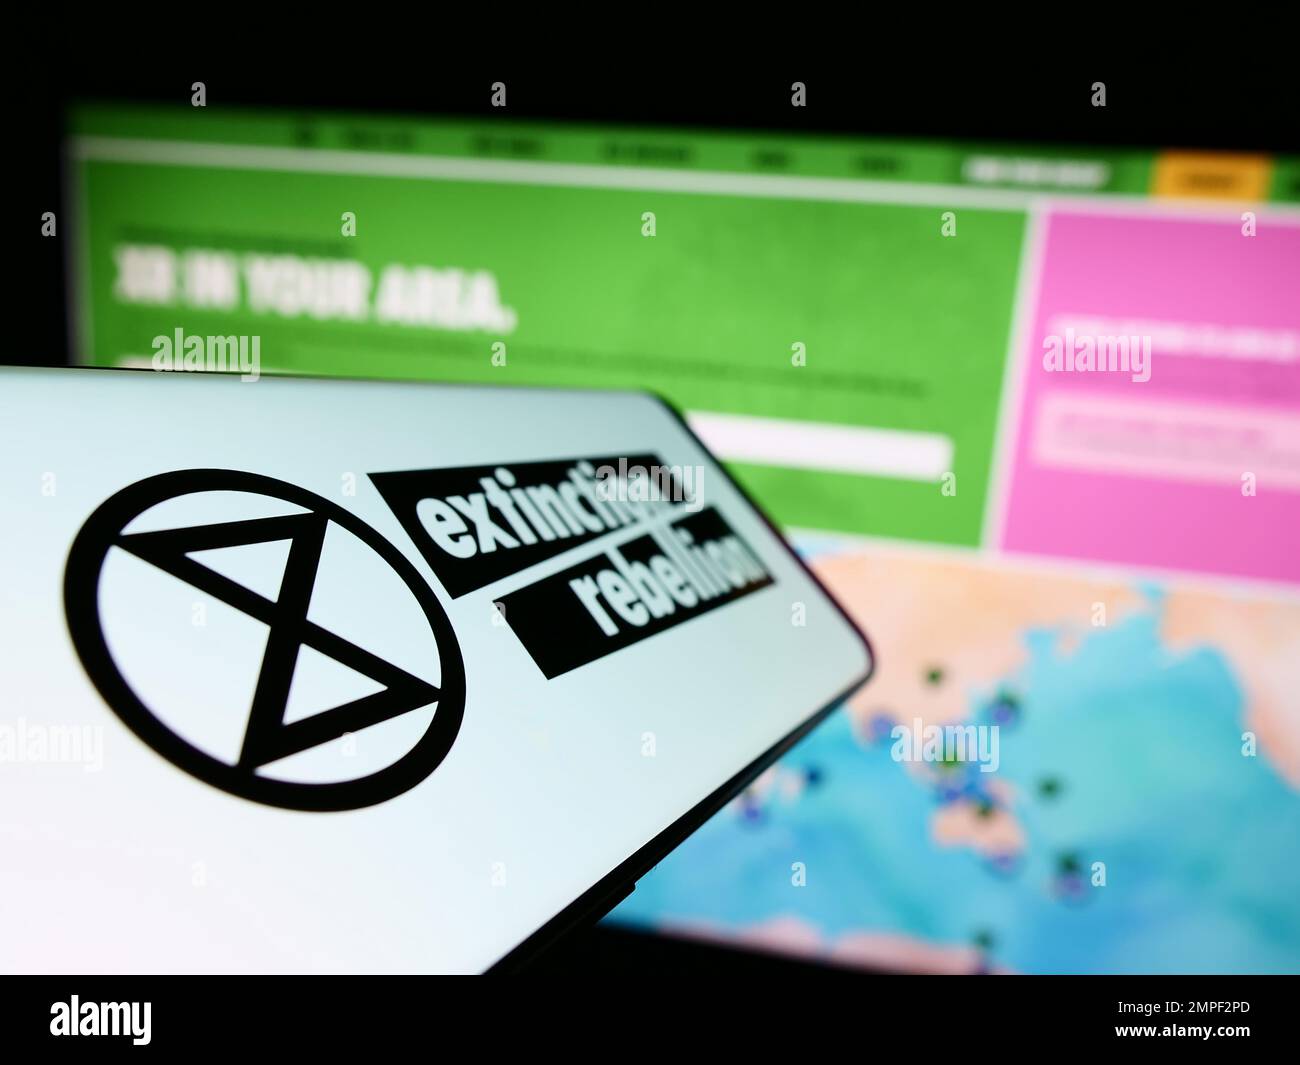 Smartphone con logo dell'organizzazione Extinction Rebellion (XR) sullo schermo di fronte al sito Web. Messa a fuoco al centro a sinistra del display del telefono. Foto Stock